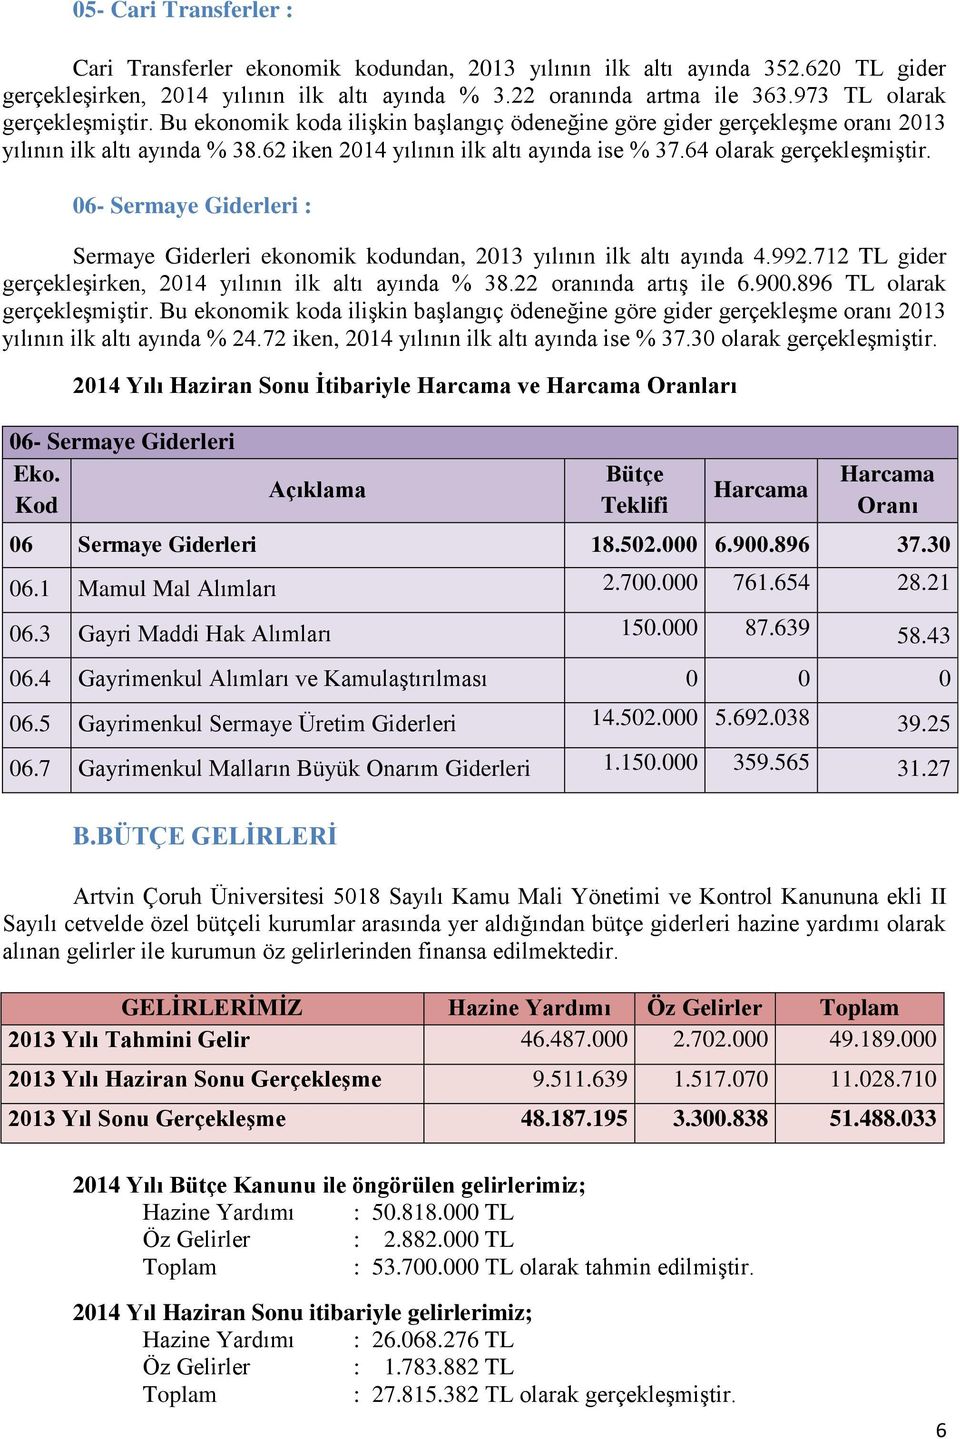 64 olarak gerçekleşmiştir. 06- Sermaye Giderleri : Sermaye Giderleri ekonomik kodundan, 2013 yılının ilk altı ayında 4.992.712 TL gider gerçekleşirken, 2014 yılının ilk altı ayında % 38.